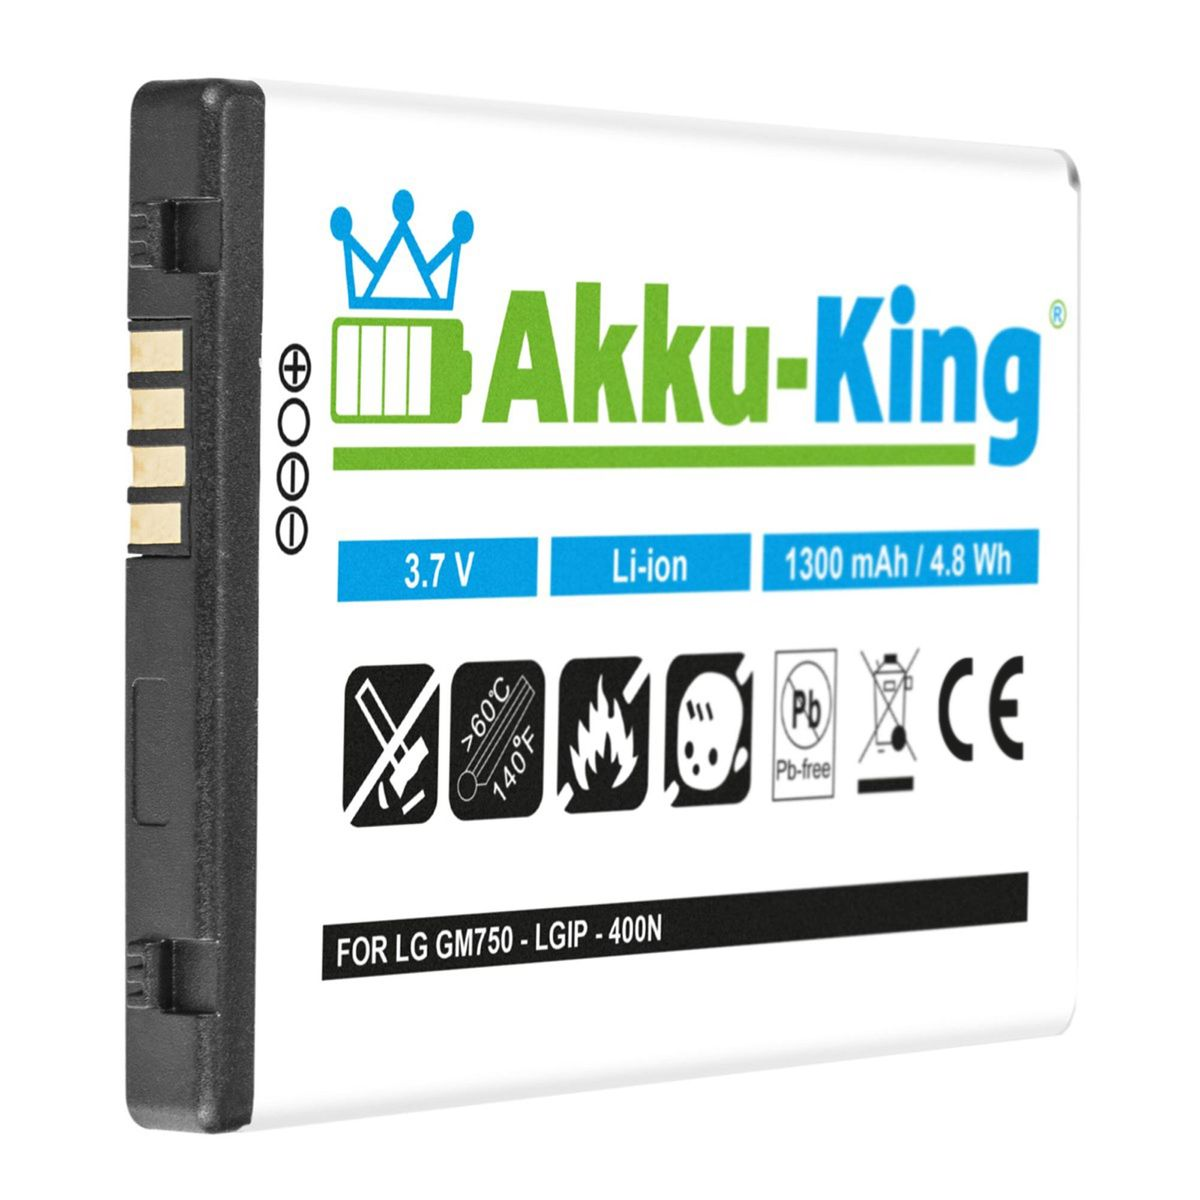 LGIP-400N Handy-Akku, LG Akku mit kompatibel Volt, 3.7 1300mAh Li-Ion AKKU-KING